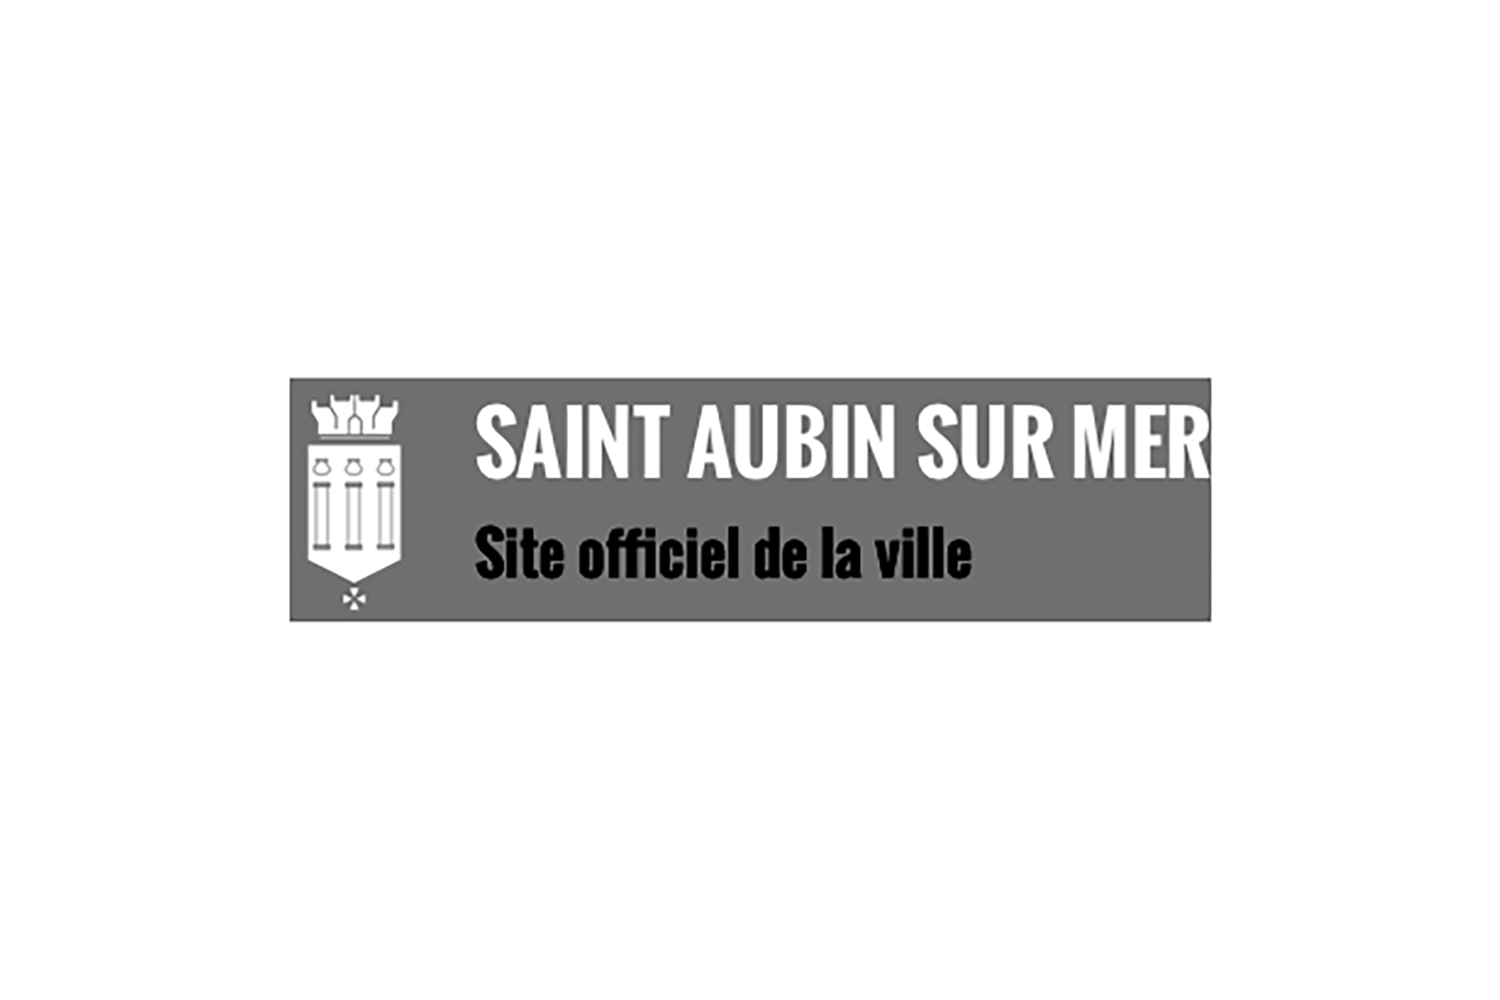 Saint-Aubin sur mer